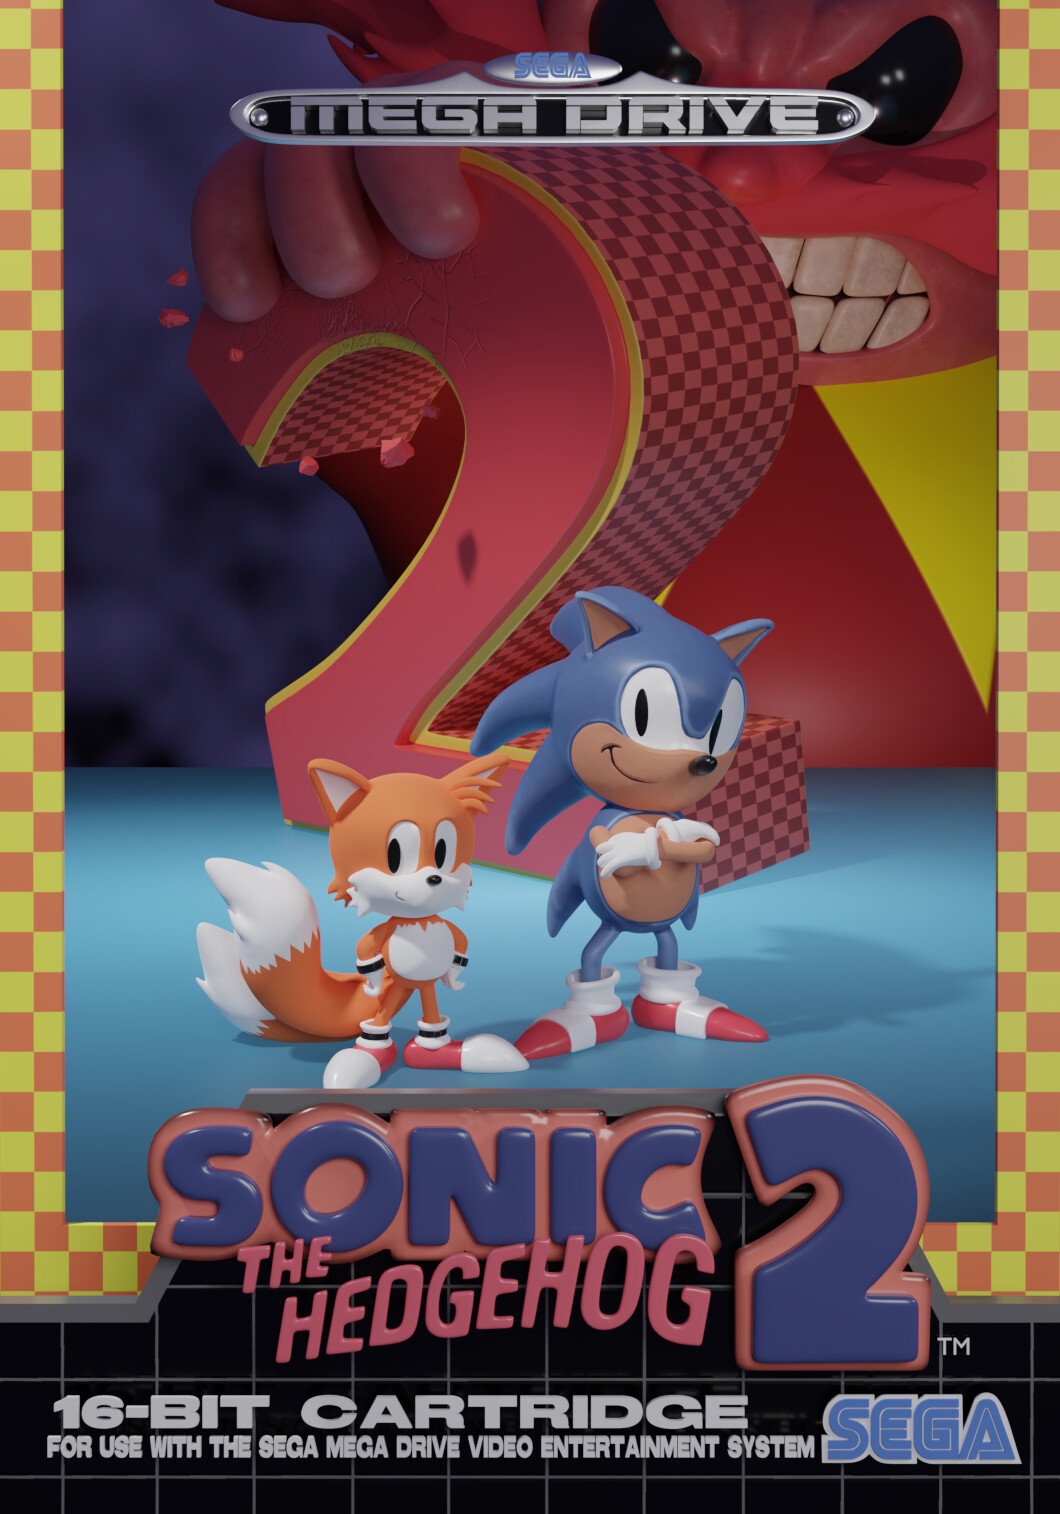 Sonic the Hedgehog 2 for Sega Mega Drive / Sega Genesis